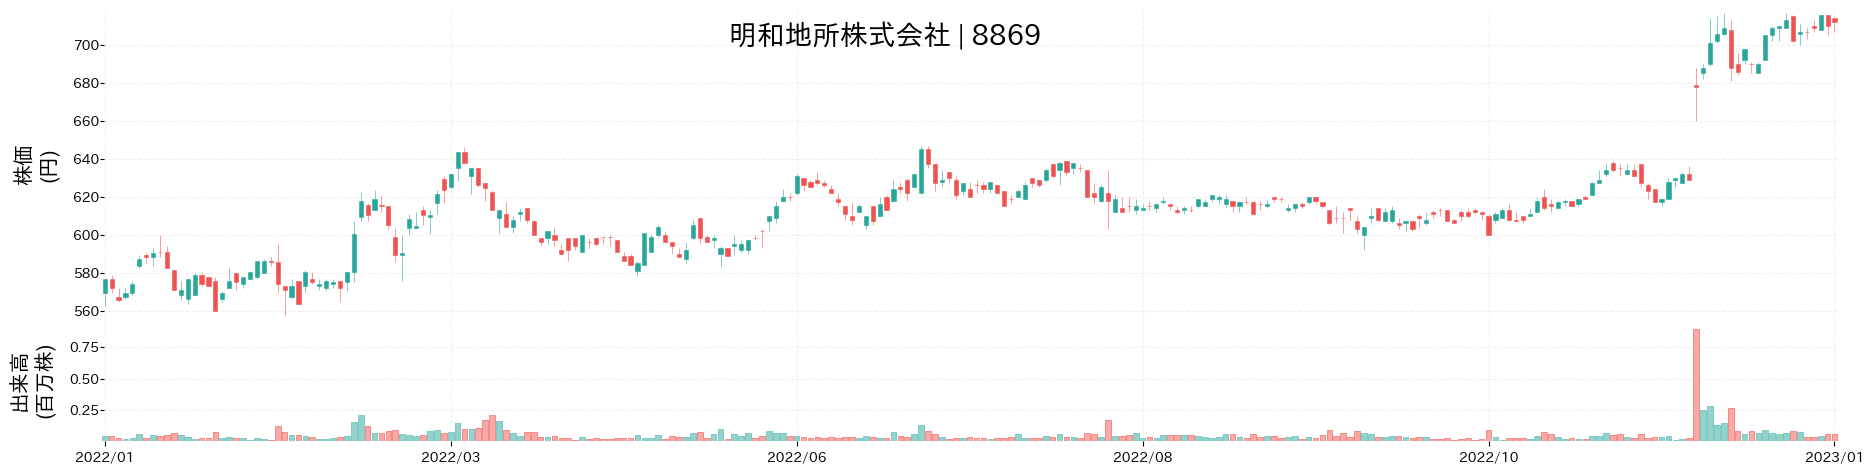 明和地所の株価推移(2022)